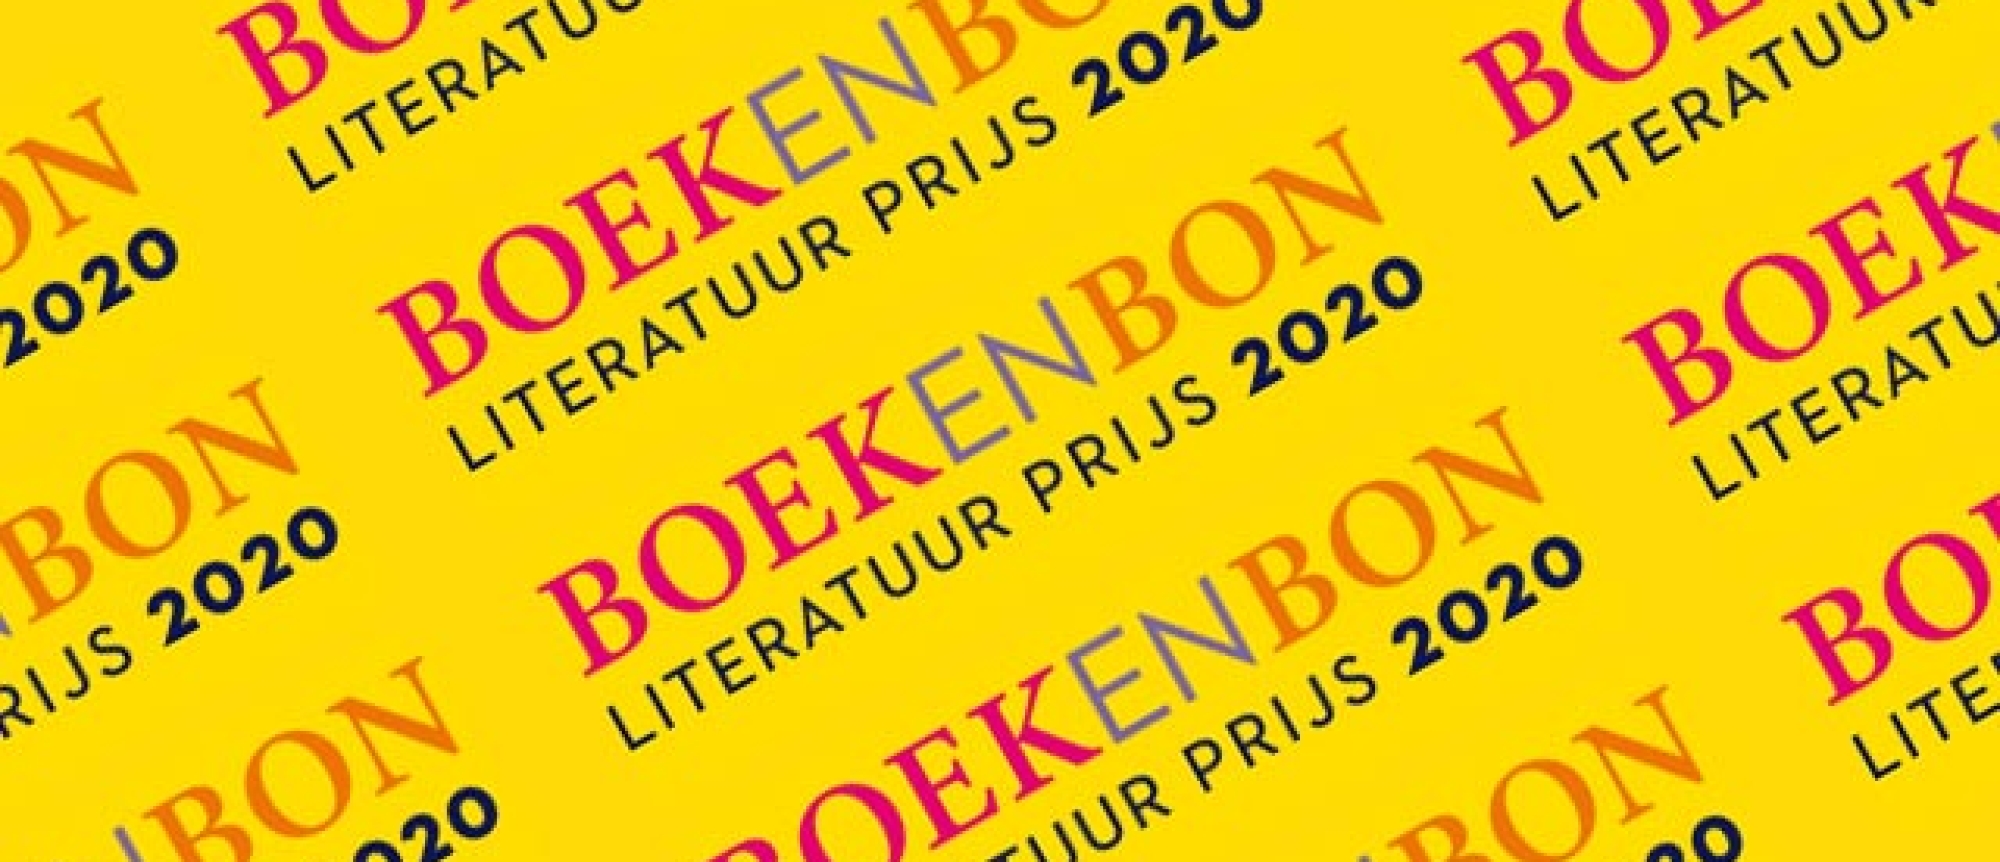 Bookspot Literatuurprijs wordt Boekenbon Literatuurprijs